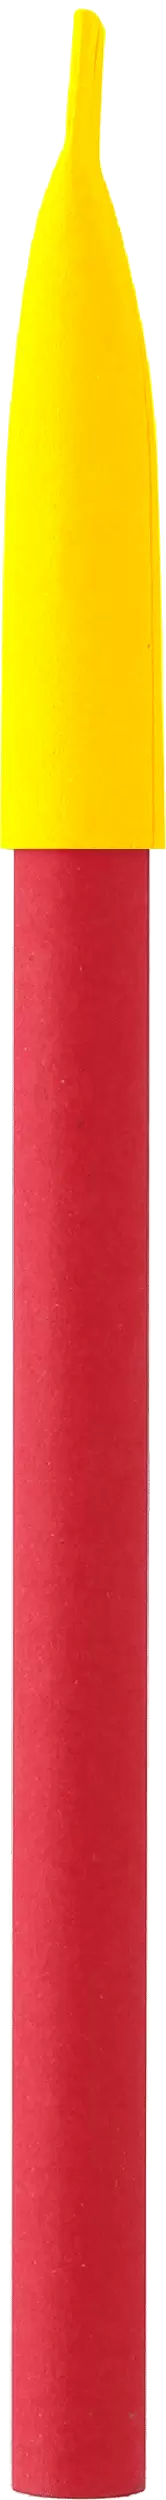 Ручка KRAFT MIX Красная с желтым 3011-03-04